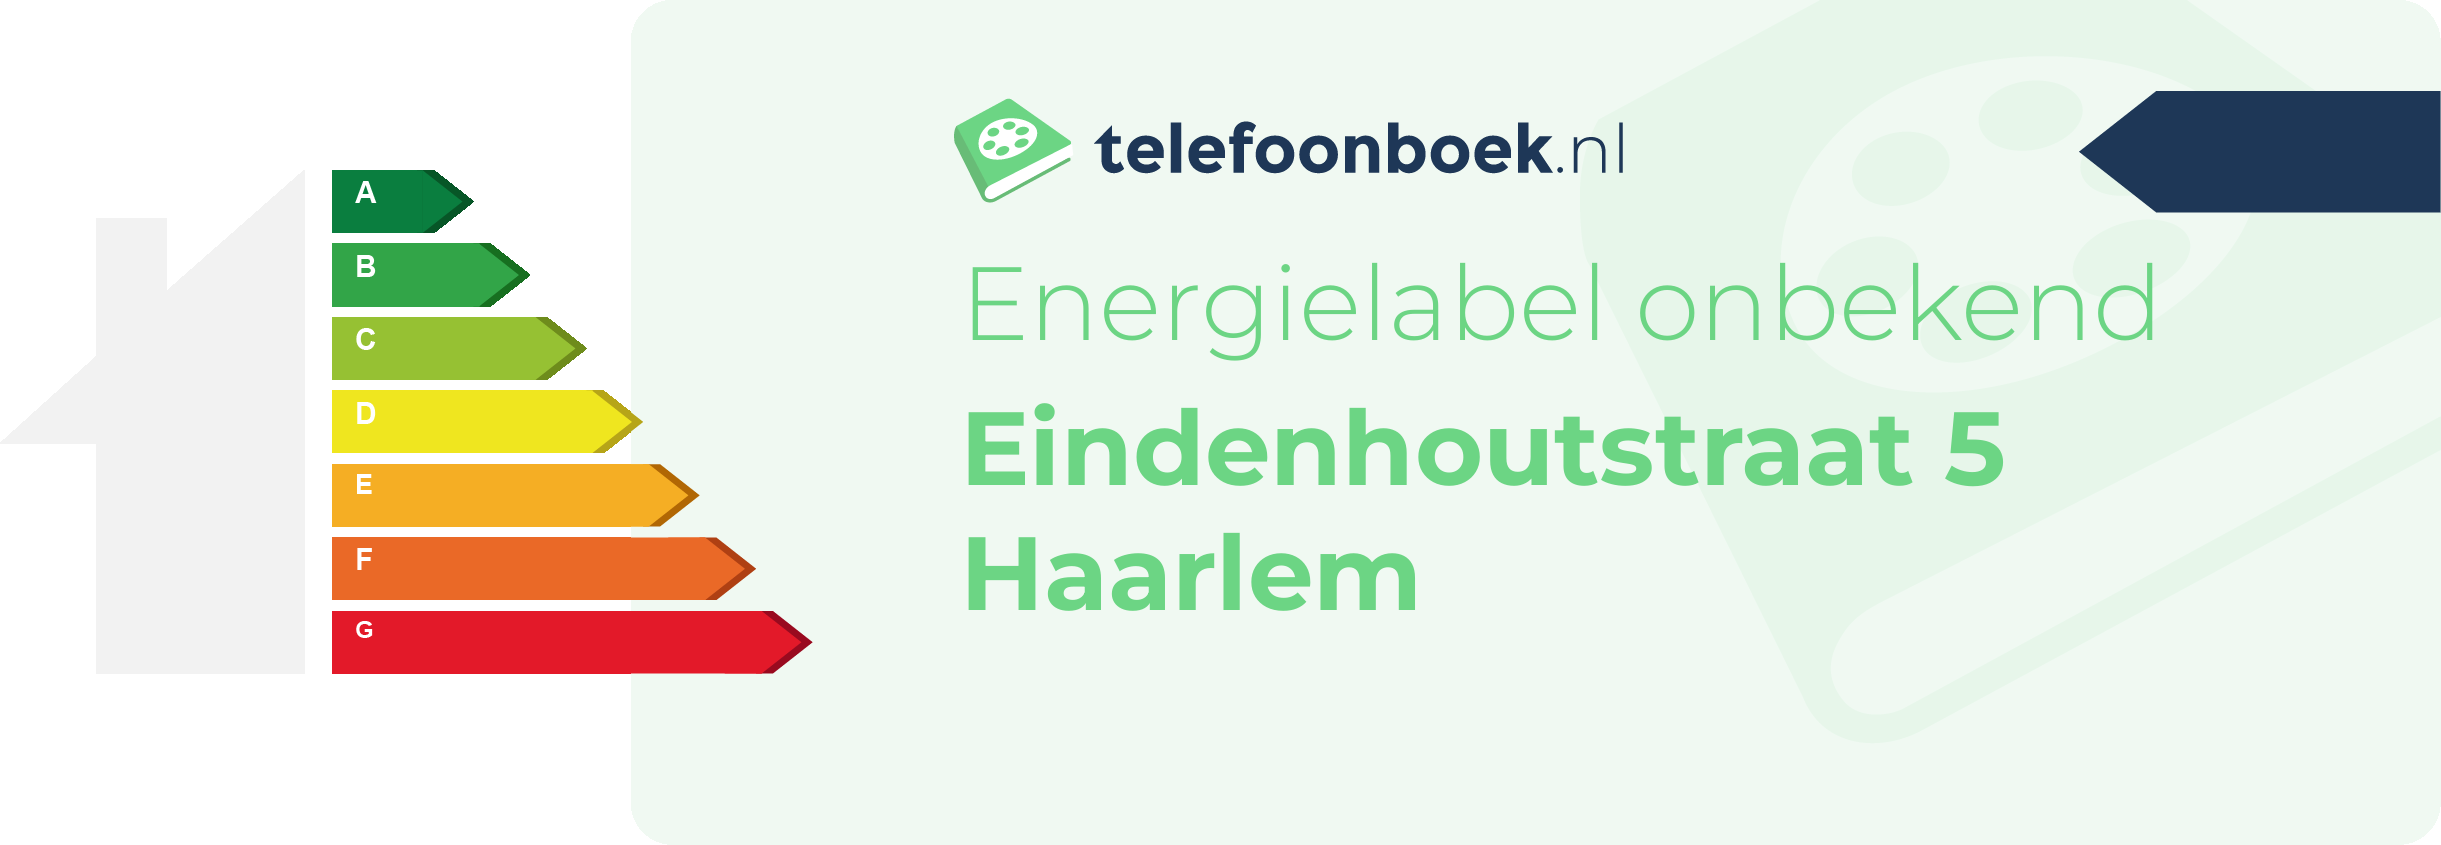 Energielabel Eindenhoutstraat 5 Haarlem